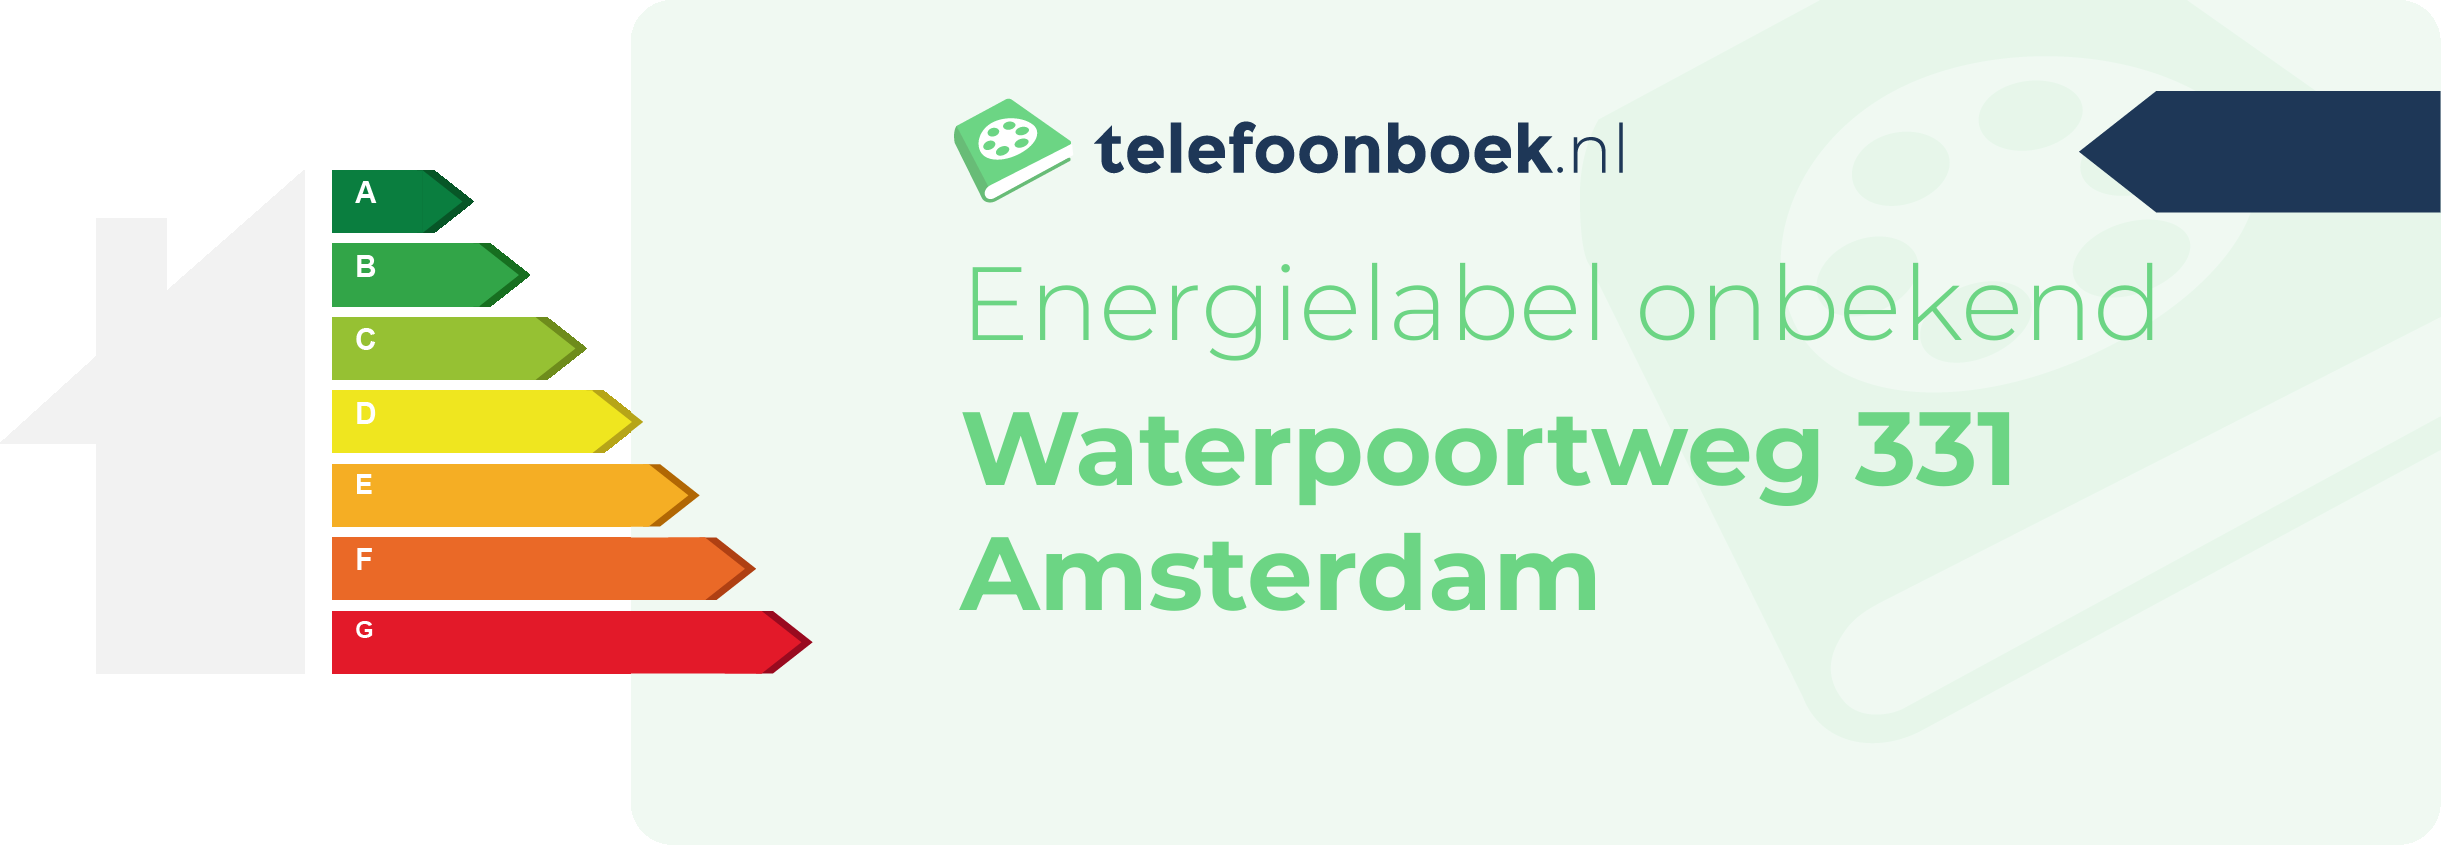 Energielabel Waterpoortweg 331 Amsterdam